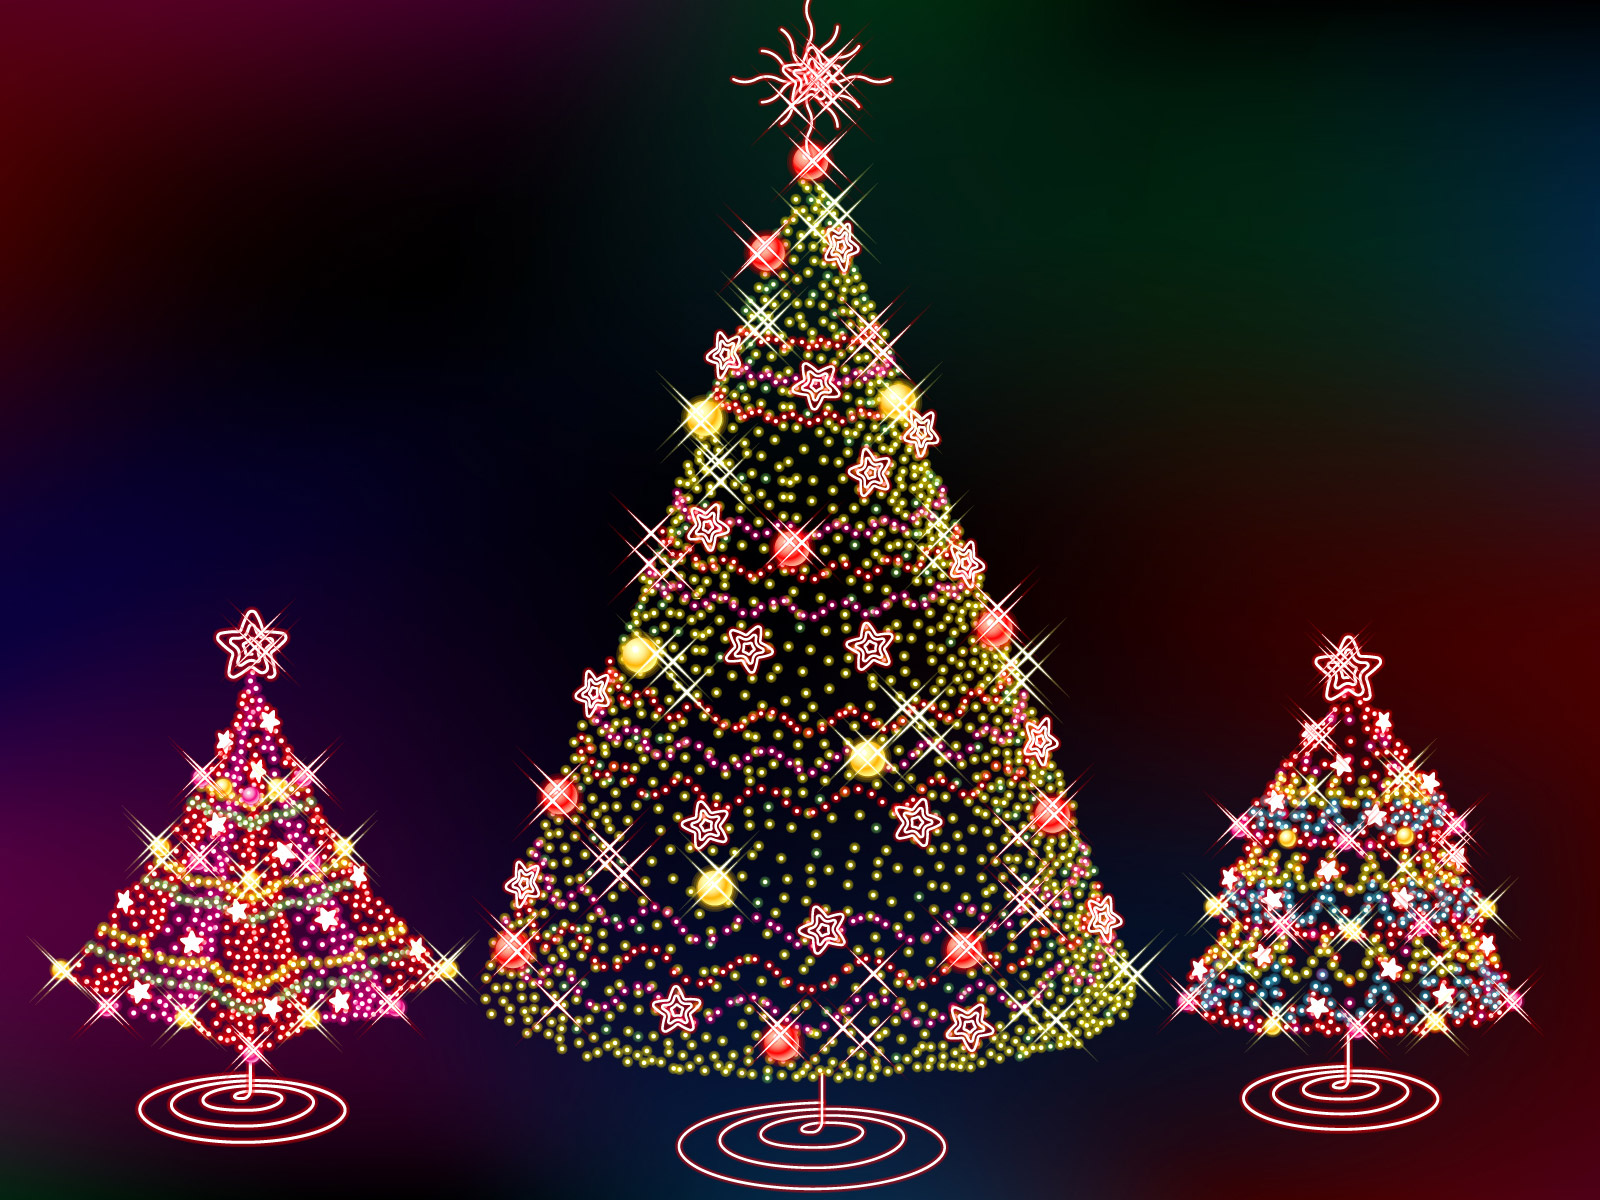 Animated Christmas Tree Background